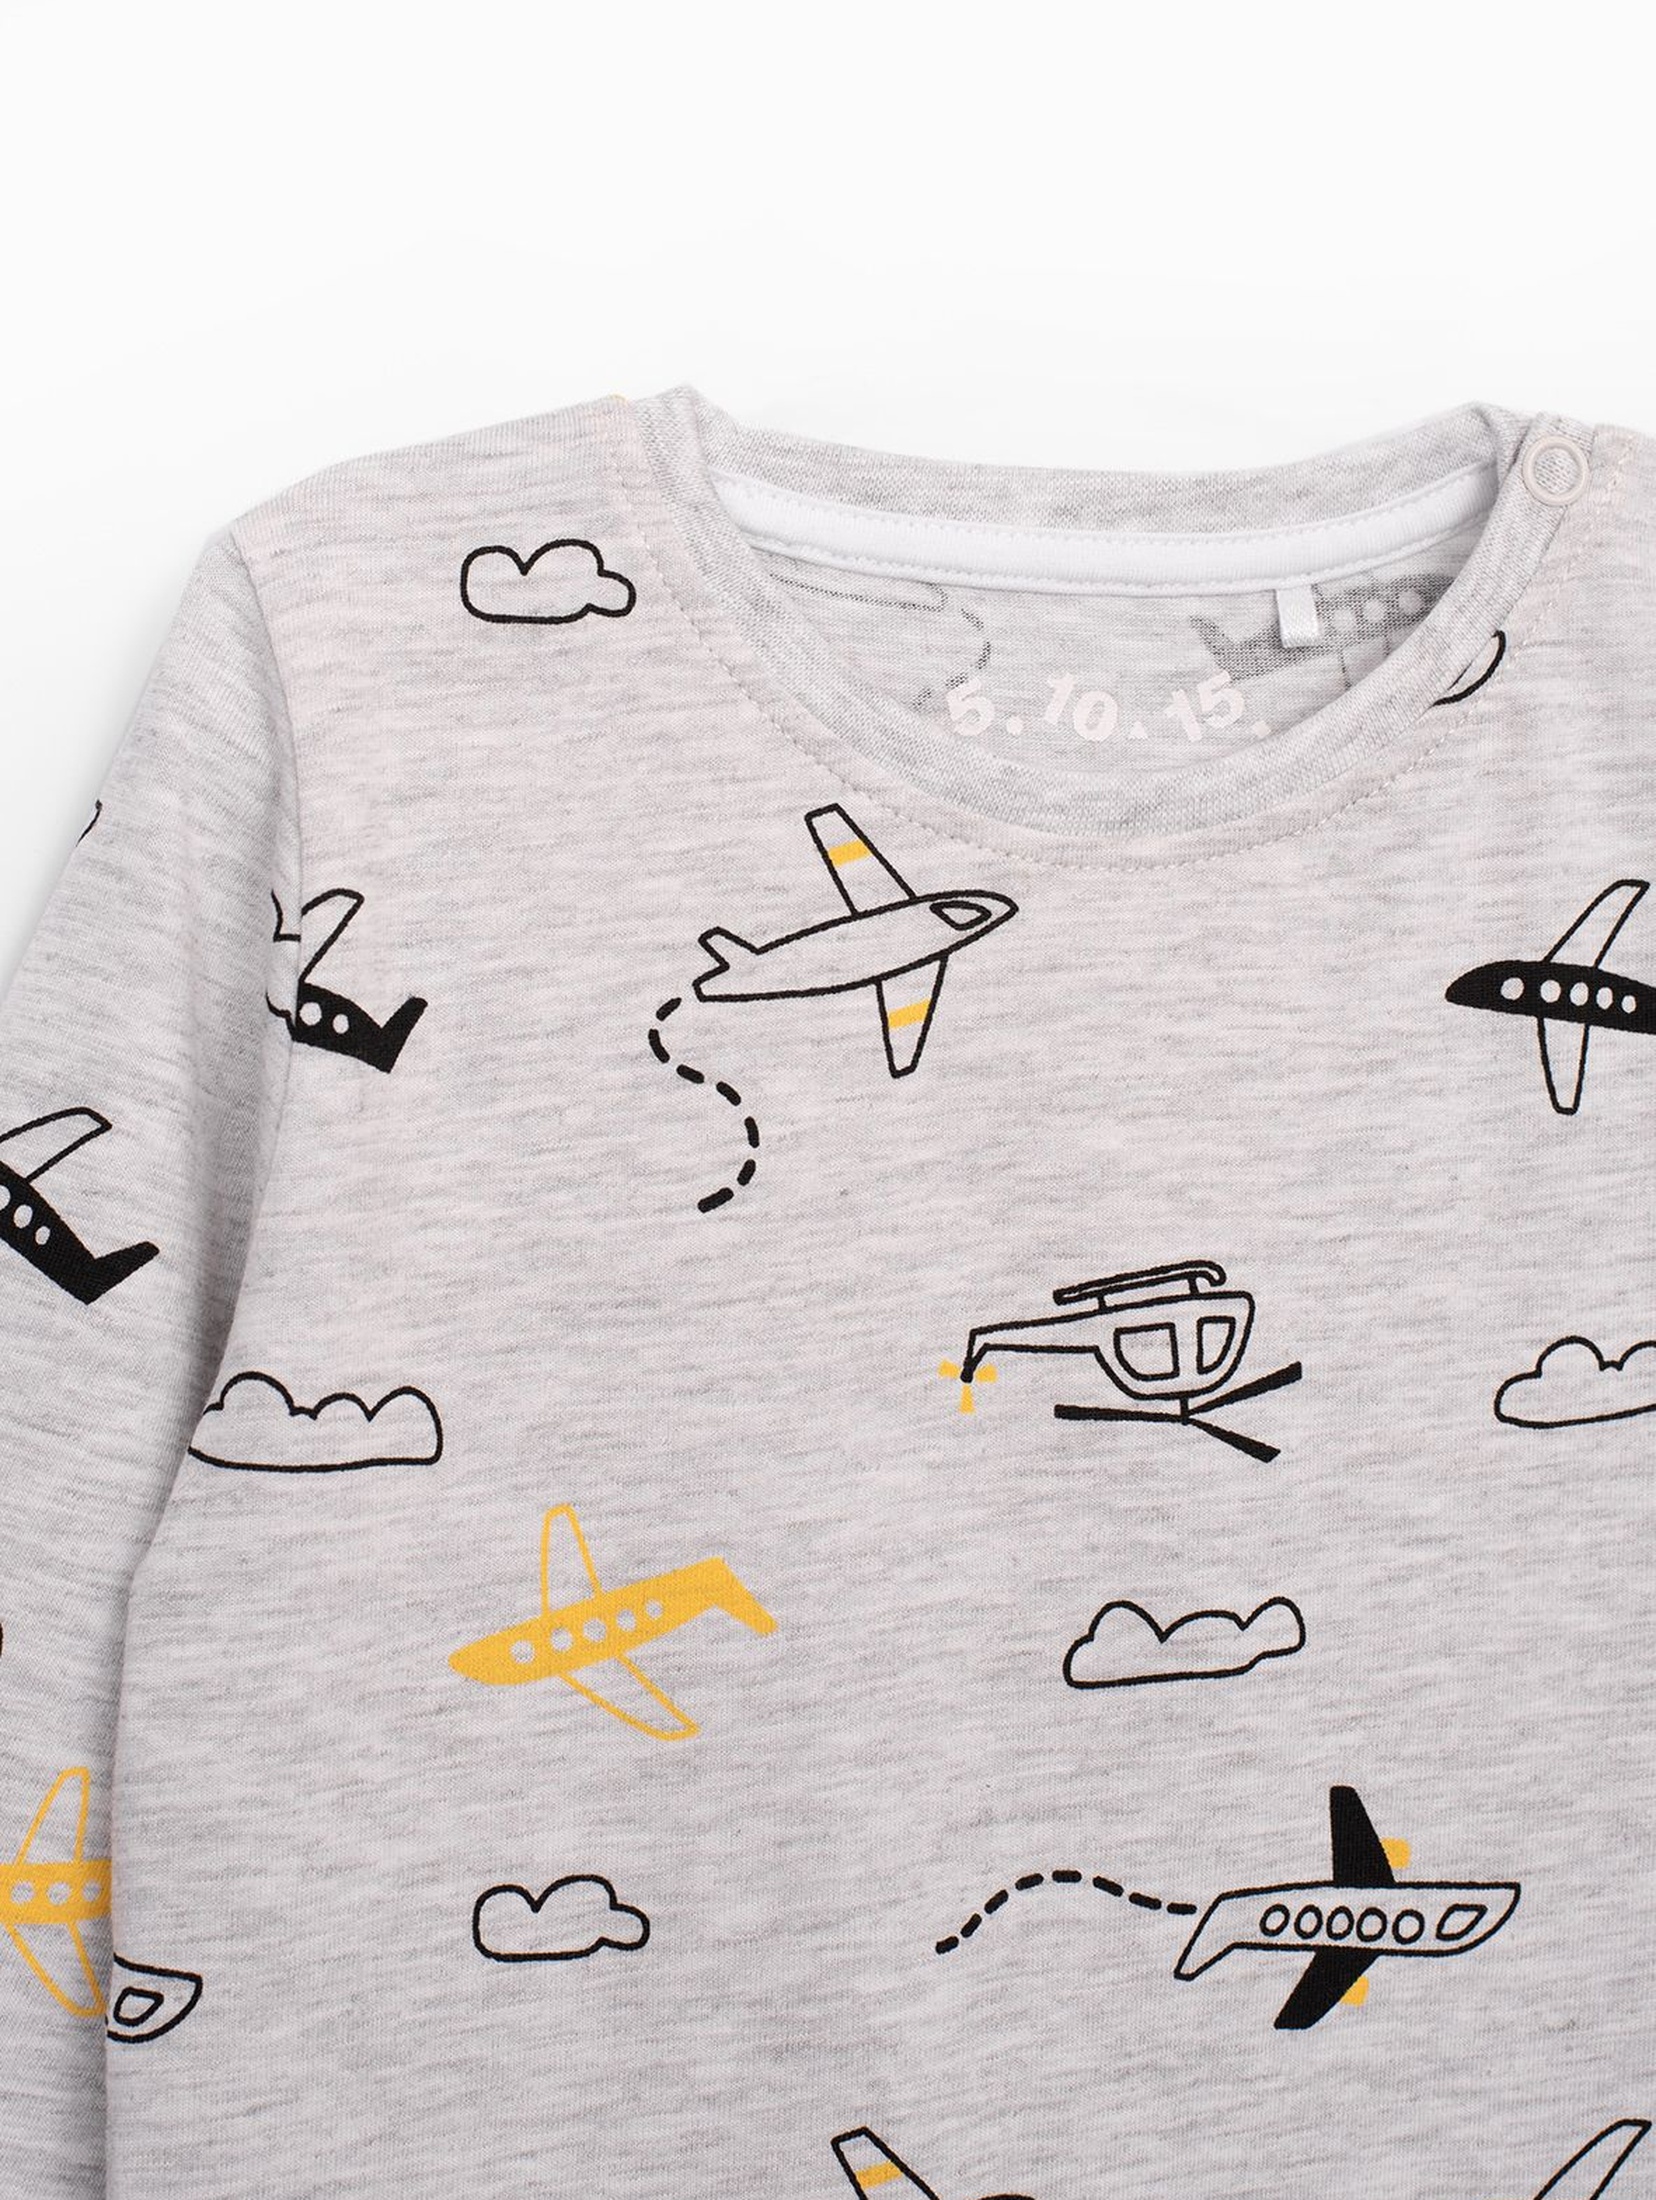 Szara bluzka niemowlęca z długim rękawem z samolotami